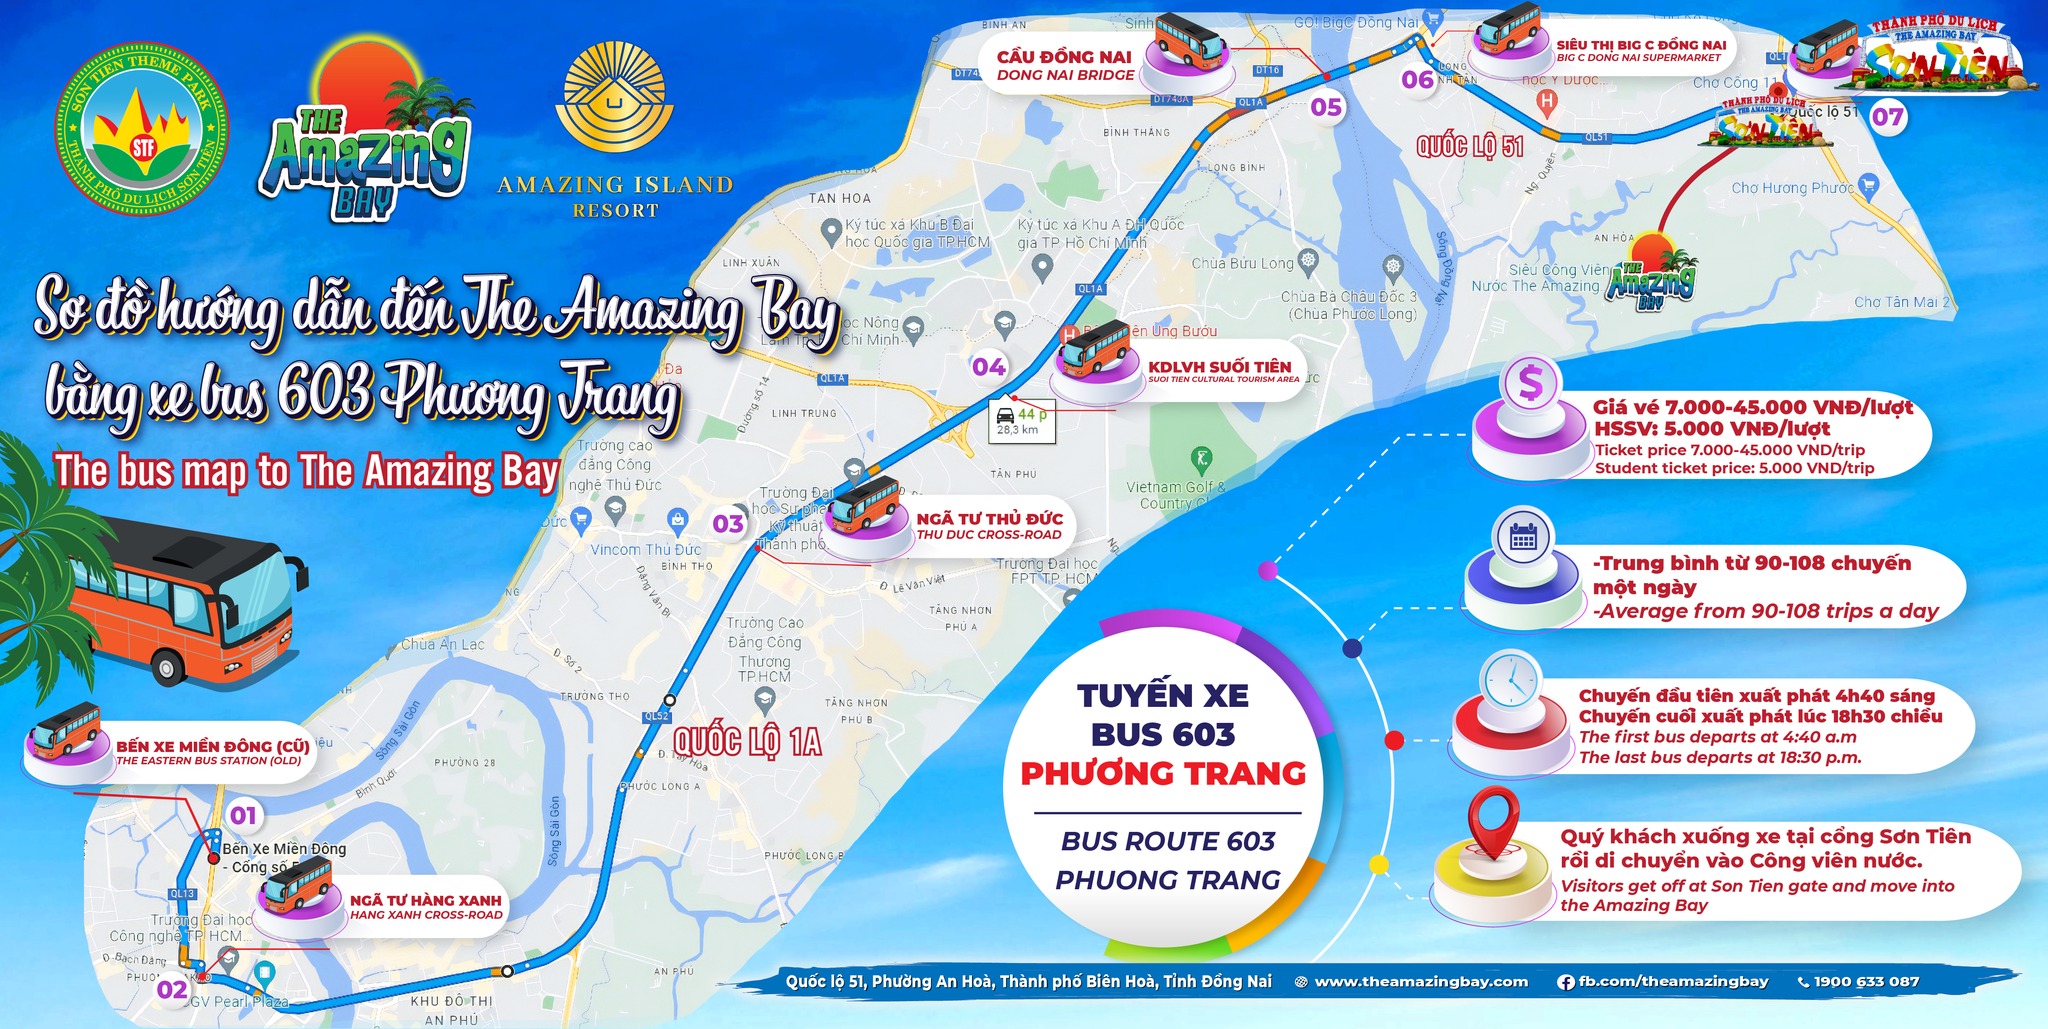 Sơ đồ hướng dẫn tuyến xe Bus từ Tp.HCM đến với The Amazing Bay Vịnh Kỳ Diệu